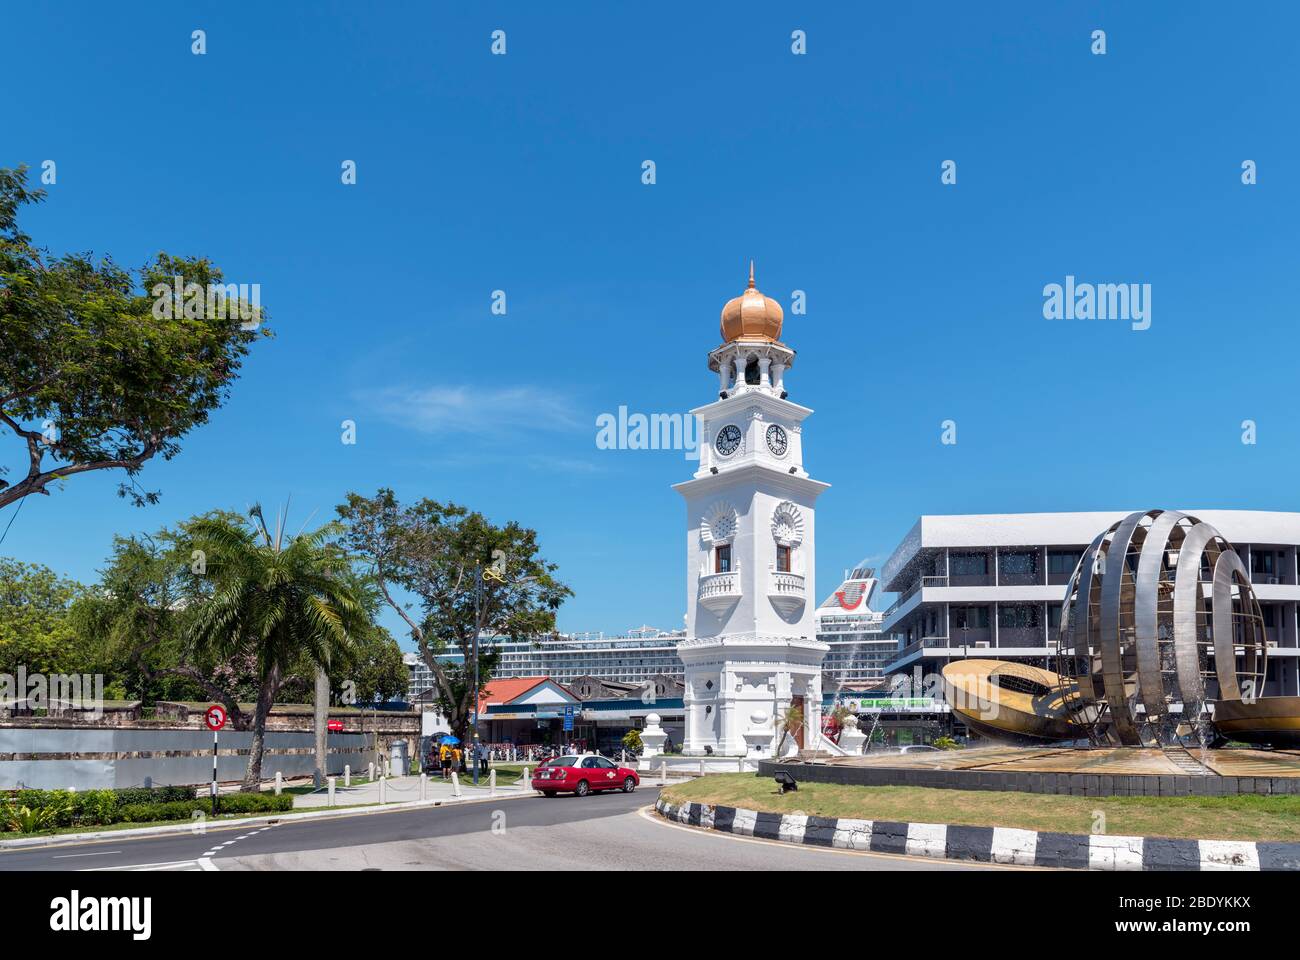 La Jubilee Clock Tower dans le vieux quartier colonial, George Town, Penang, Malaisie Banque D'Images